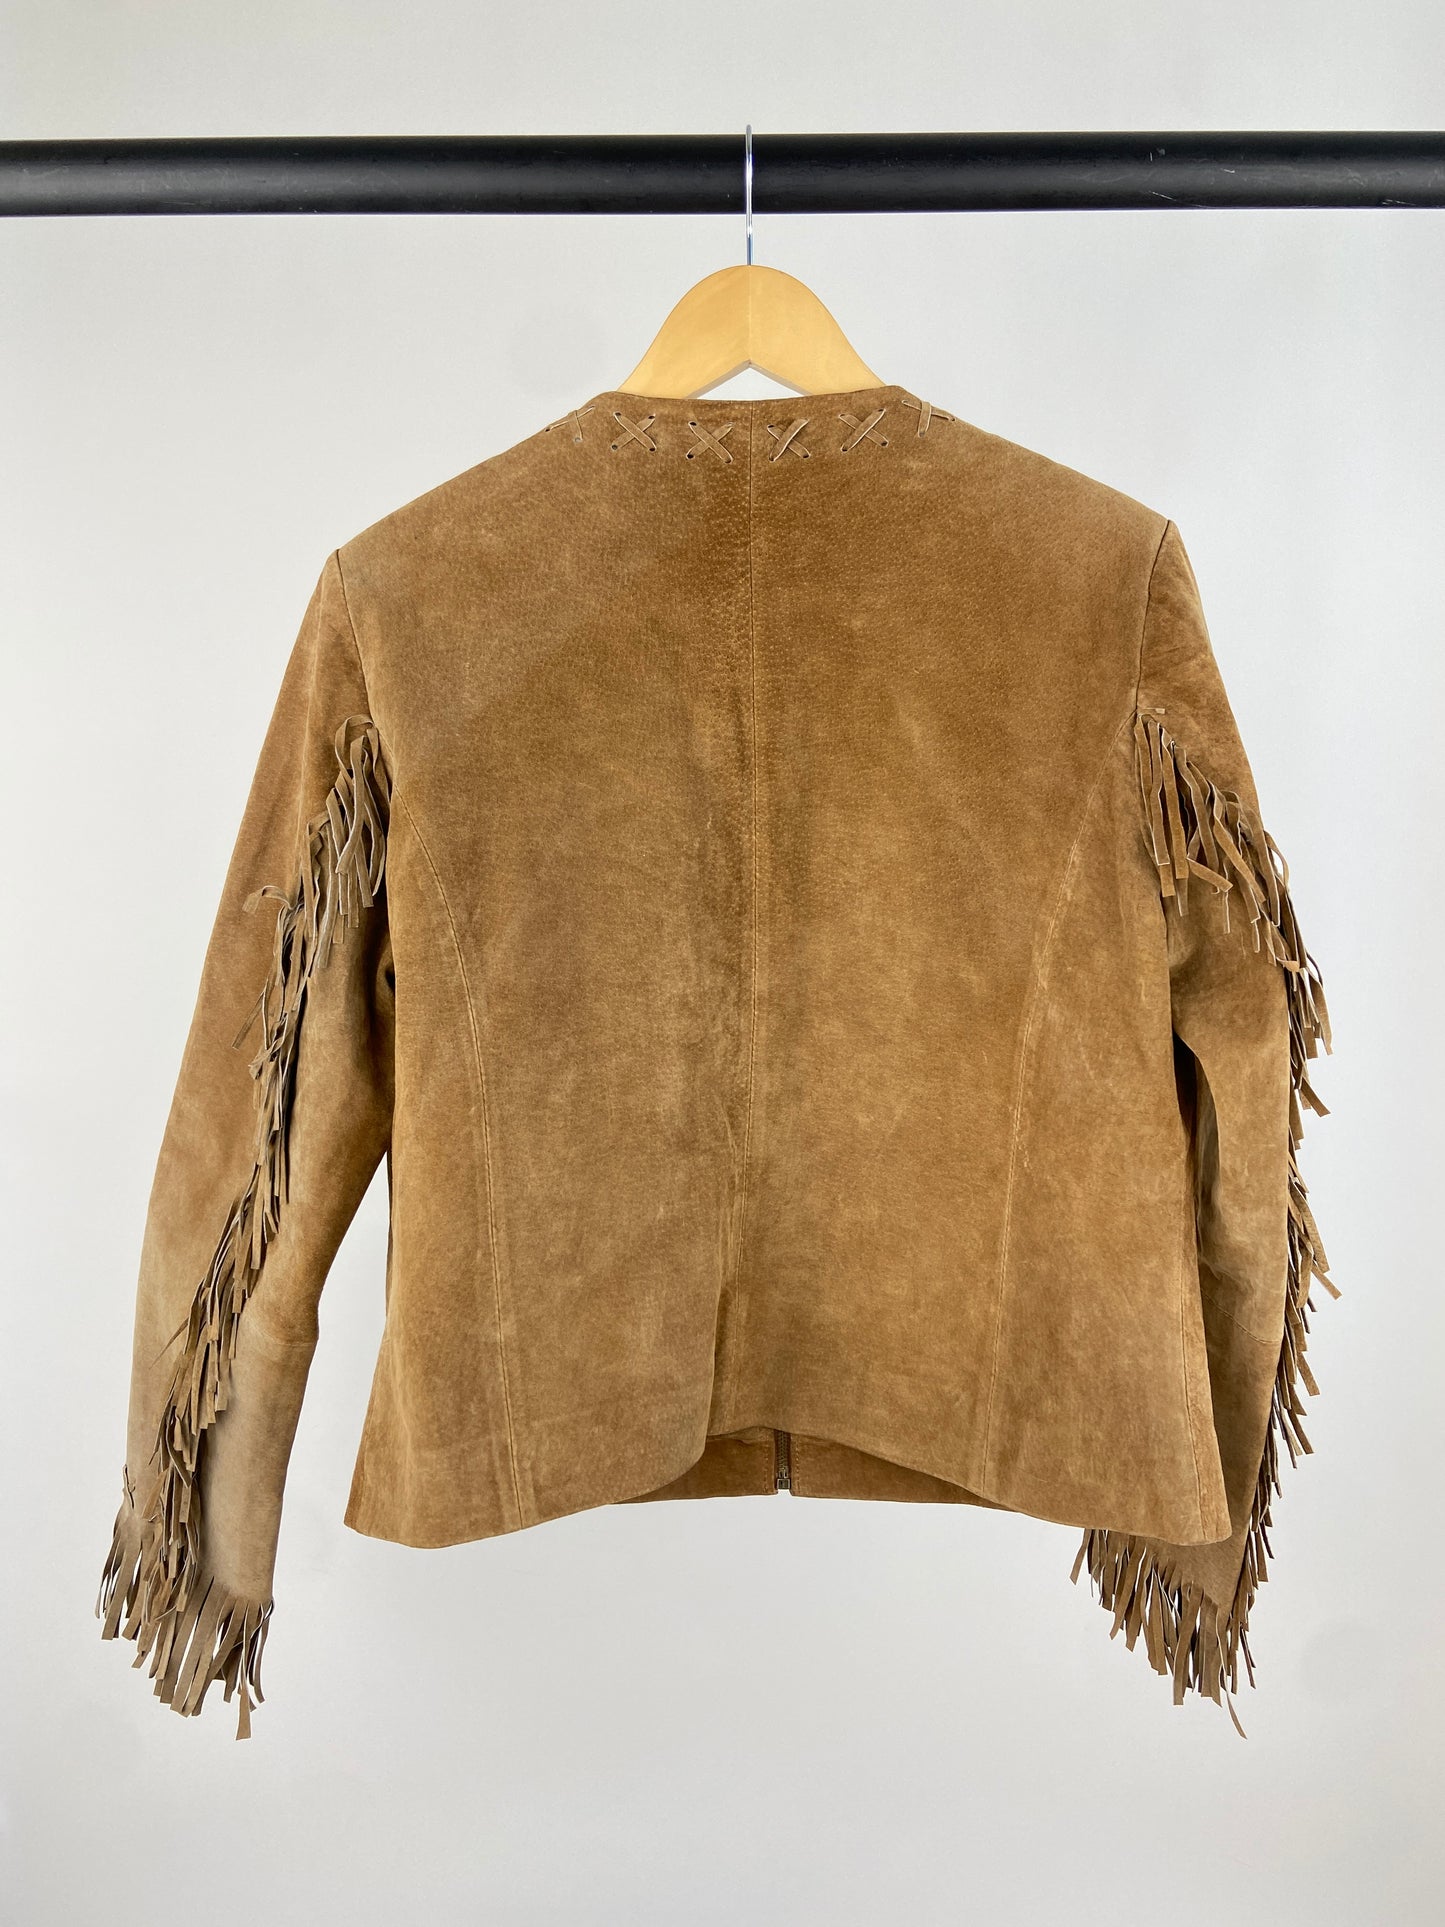 Western 70s Suede Tassel Jacket